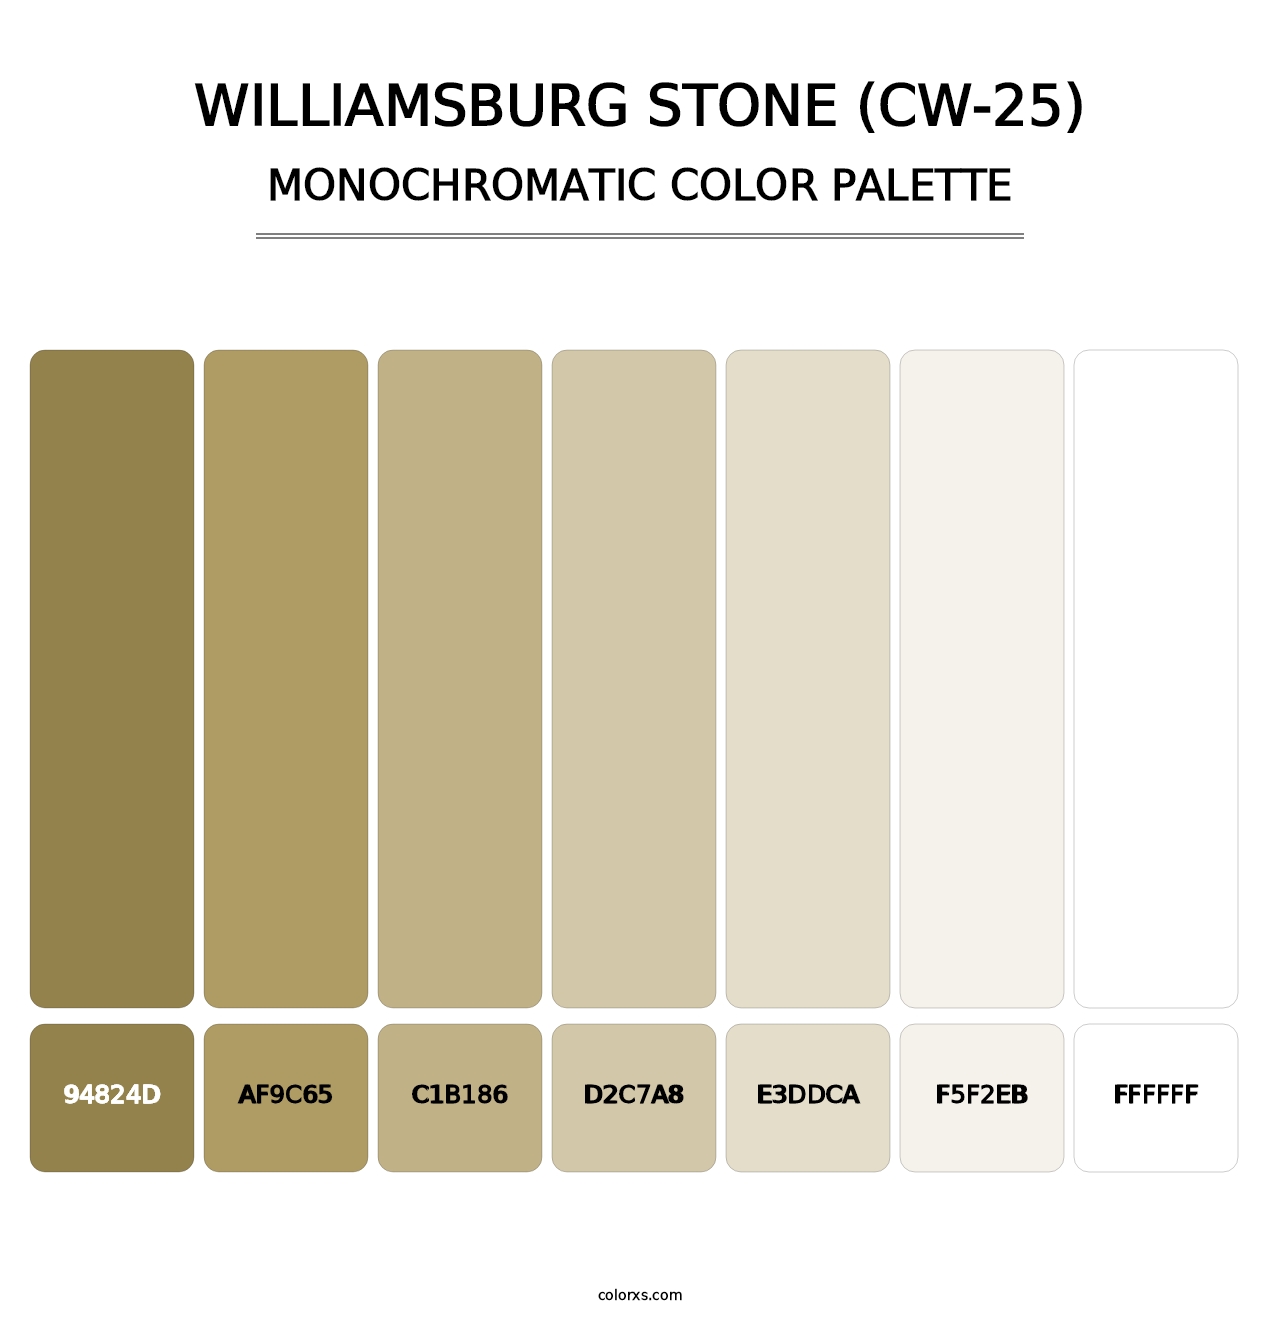 Williamsburg Stone (CW-25) - Monochromatic Color Palette